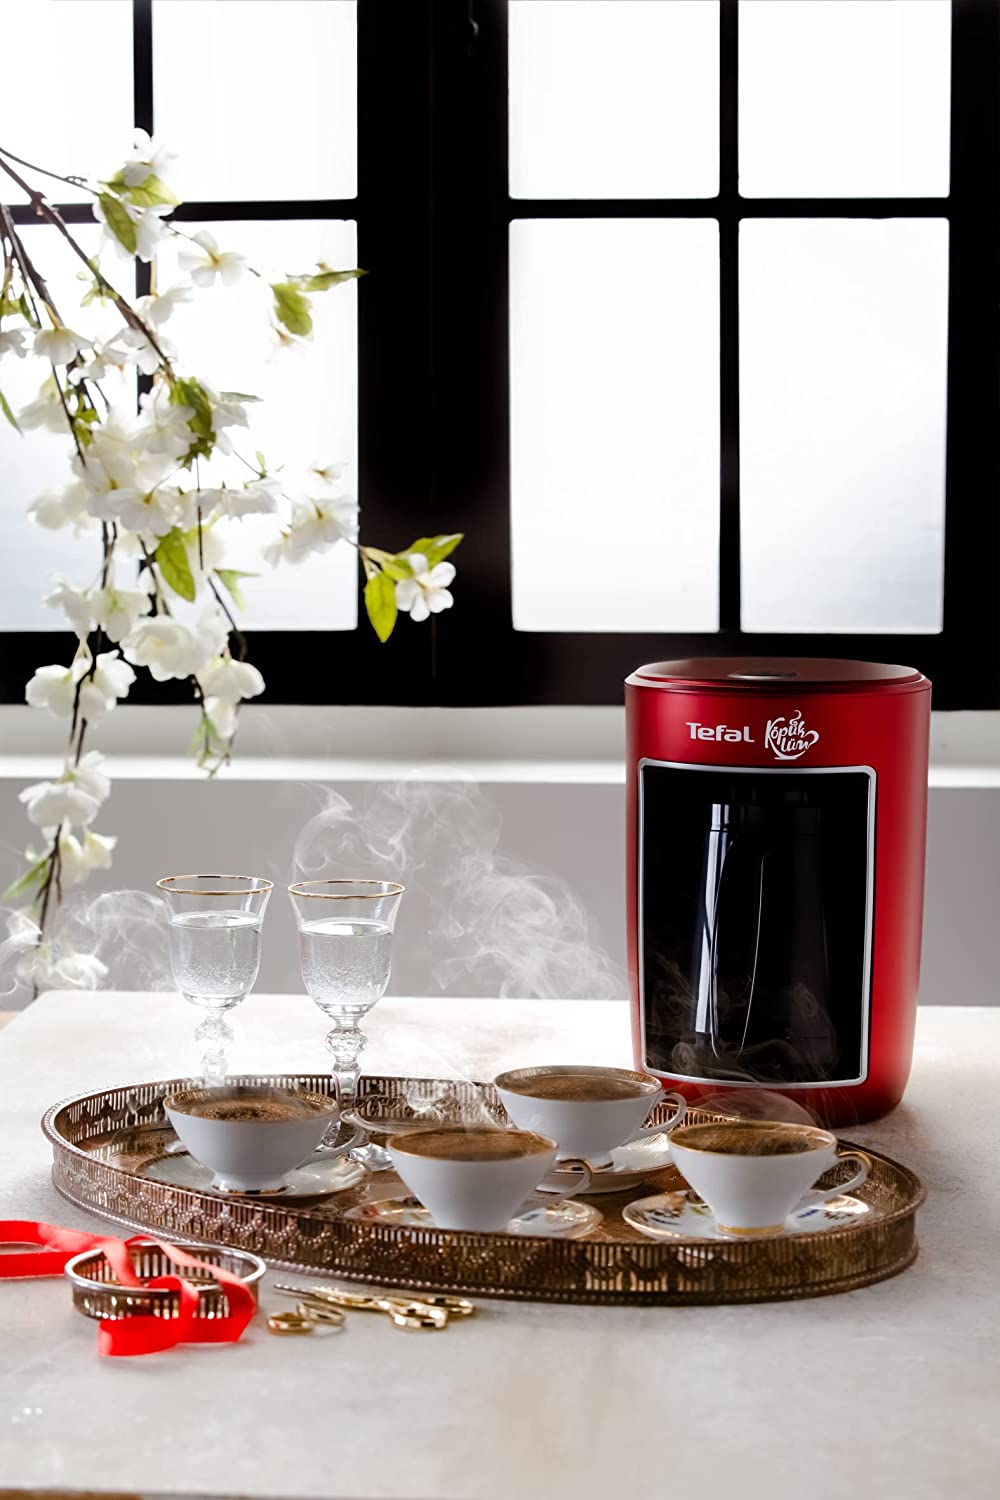 ماكينة تحضير القهوة التركي تيفال، 735 وات، شاشة تعمل باللمس، ديجيتال، أحمر، CM820534